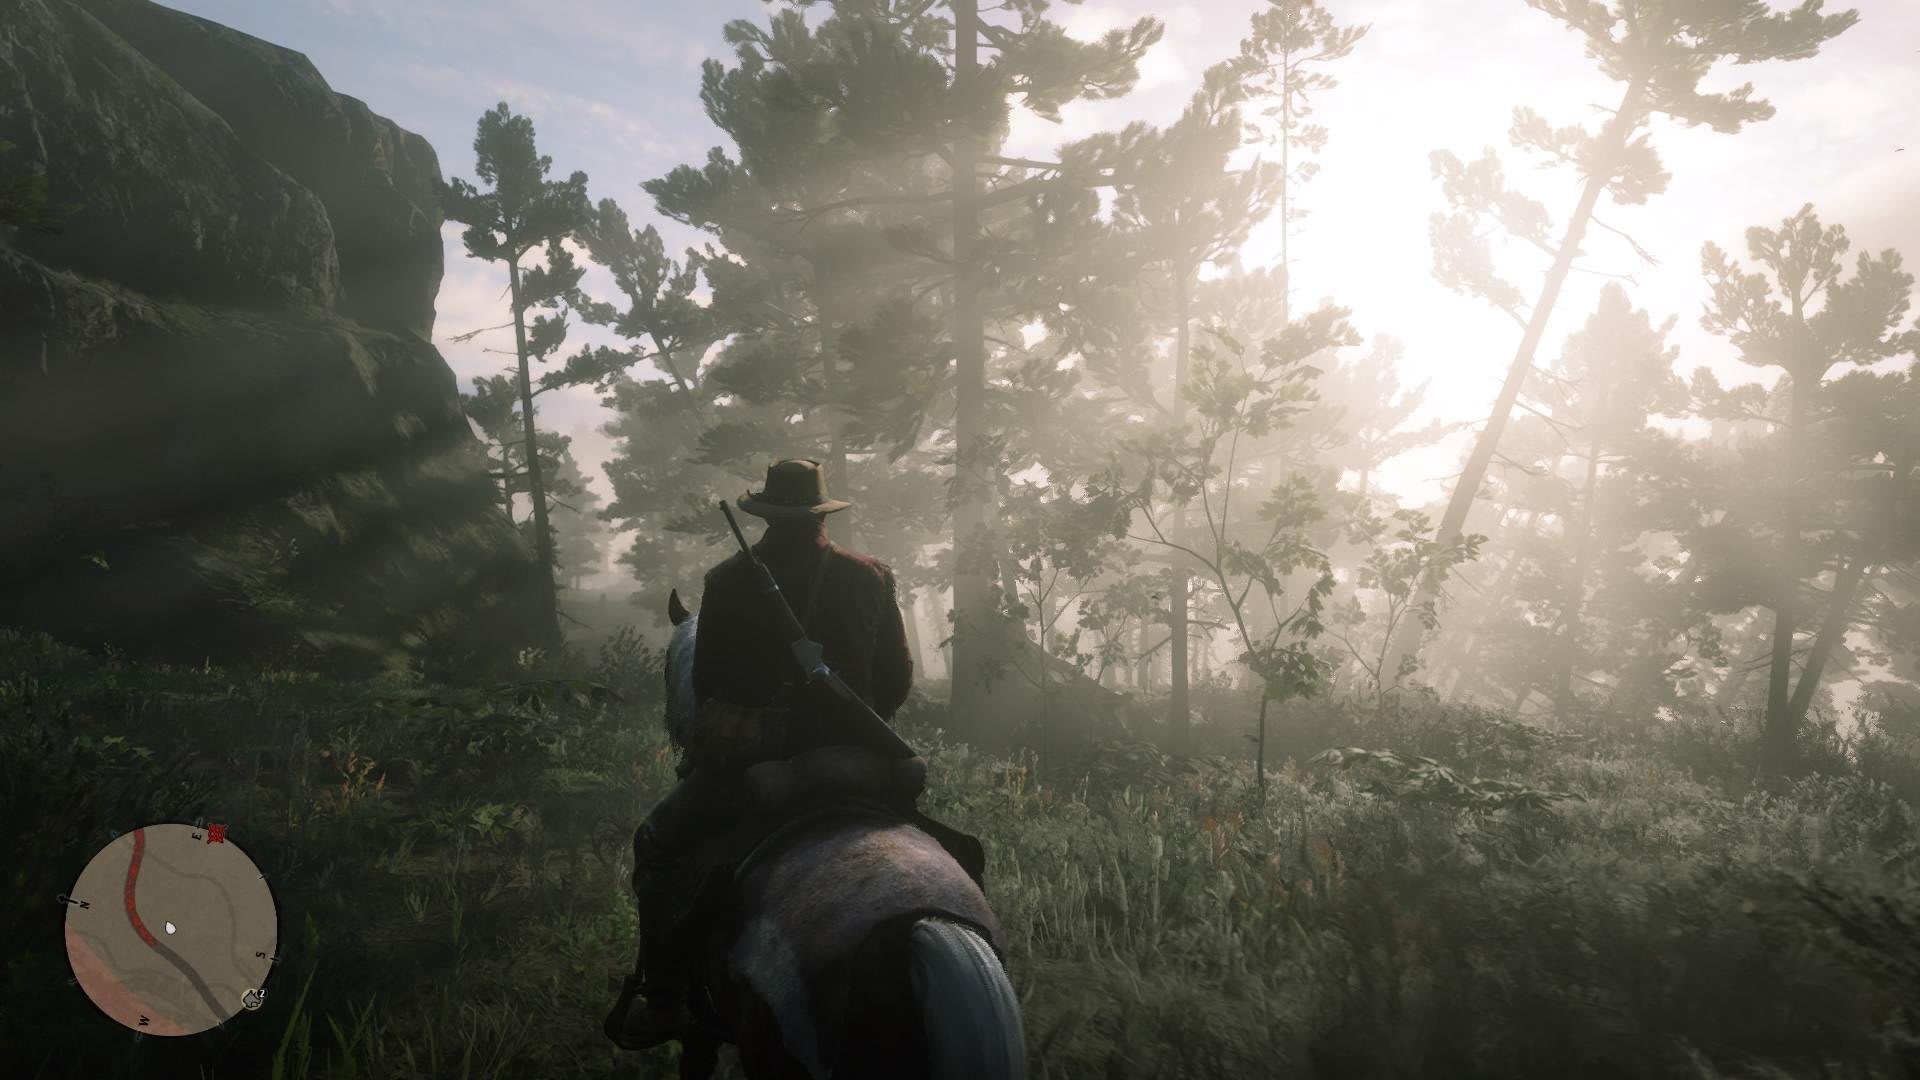 Red Dead Redemption 2 : Os melhores cavalos do jogo.